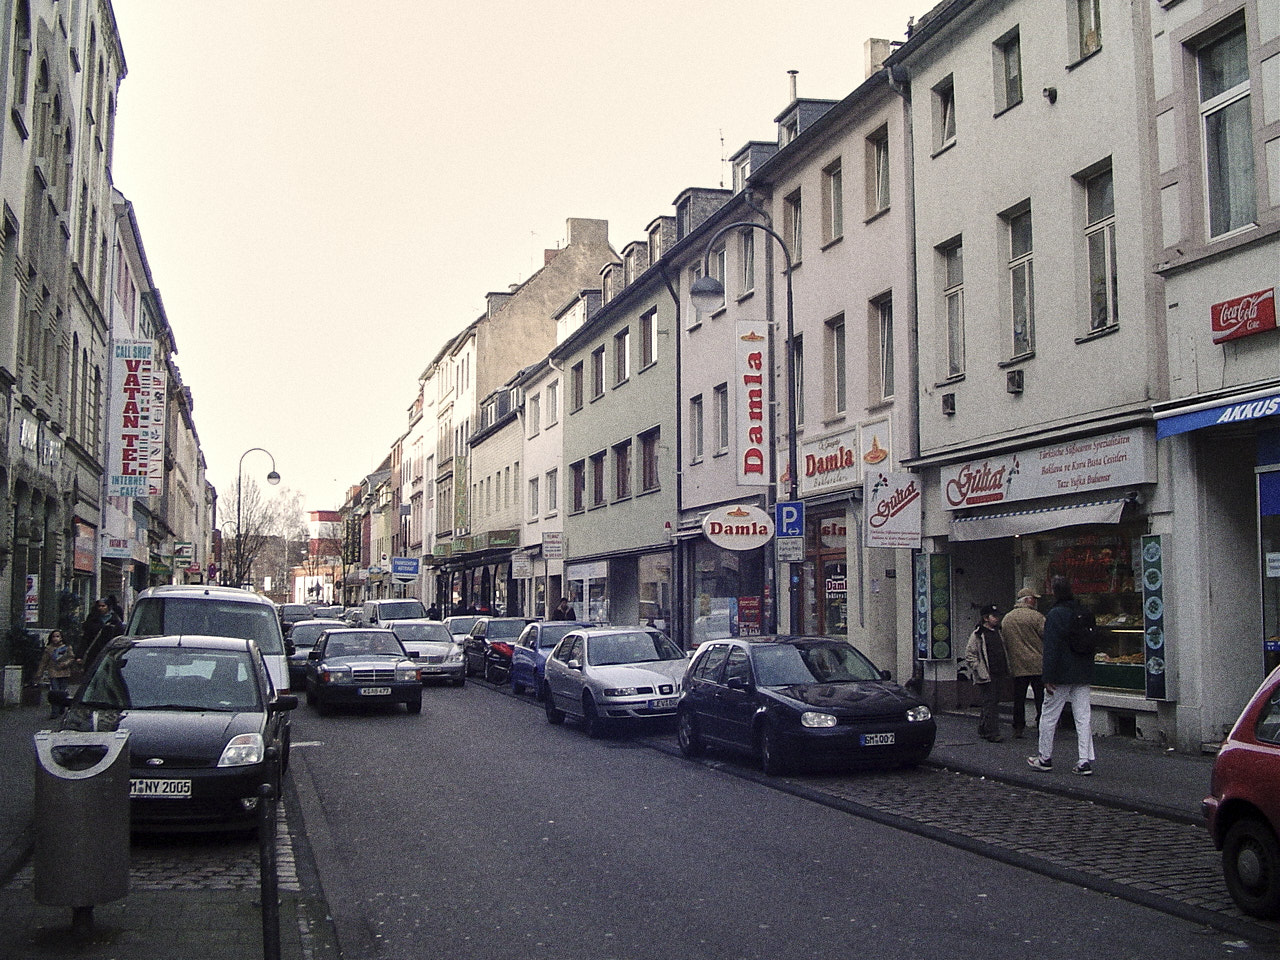 Was diese Straße in Köln mit dem Plattenpapzt zu tun hat, erfahrt ihr in der Folge.
(Photo (Edited): Keupstrasse by A.Savin, CC BY-SA 3.0 https://creativecommons.org/licenses/by-sa/3.0, via Wikimedia Commons)